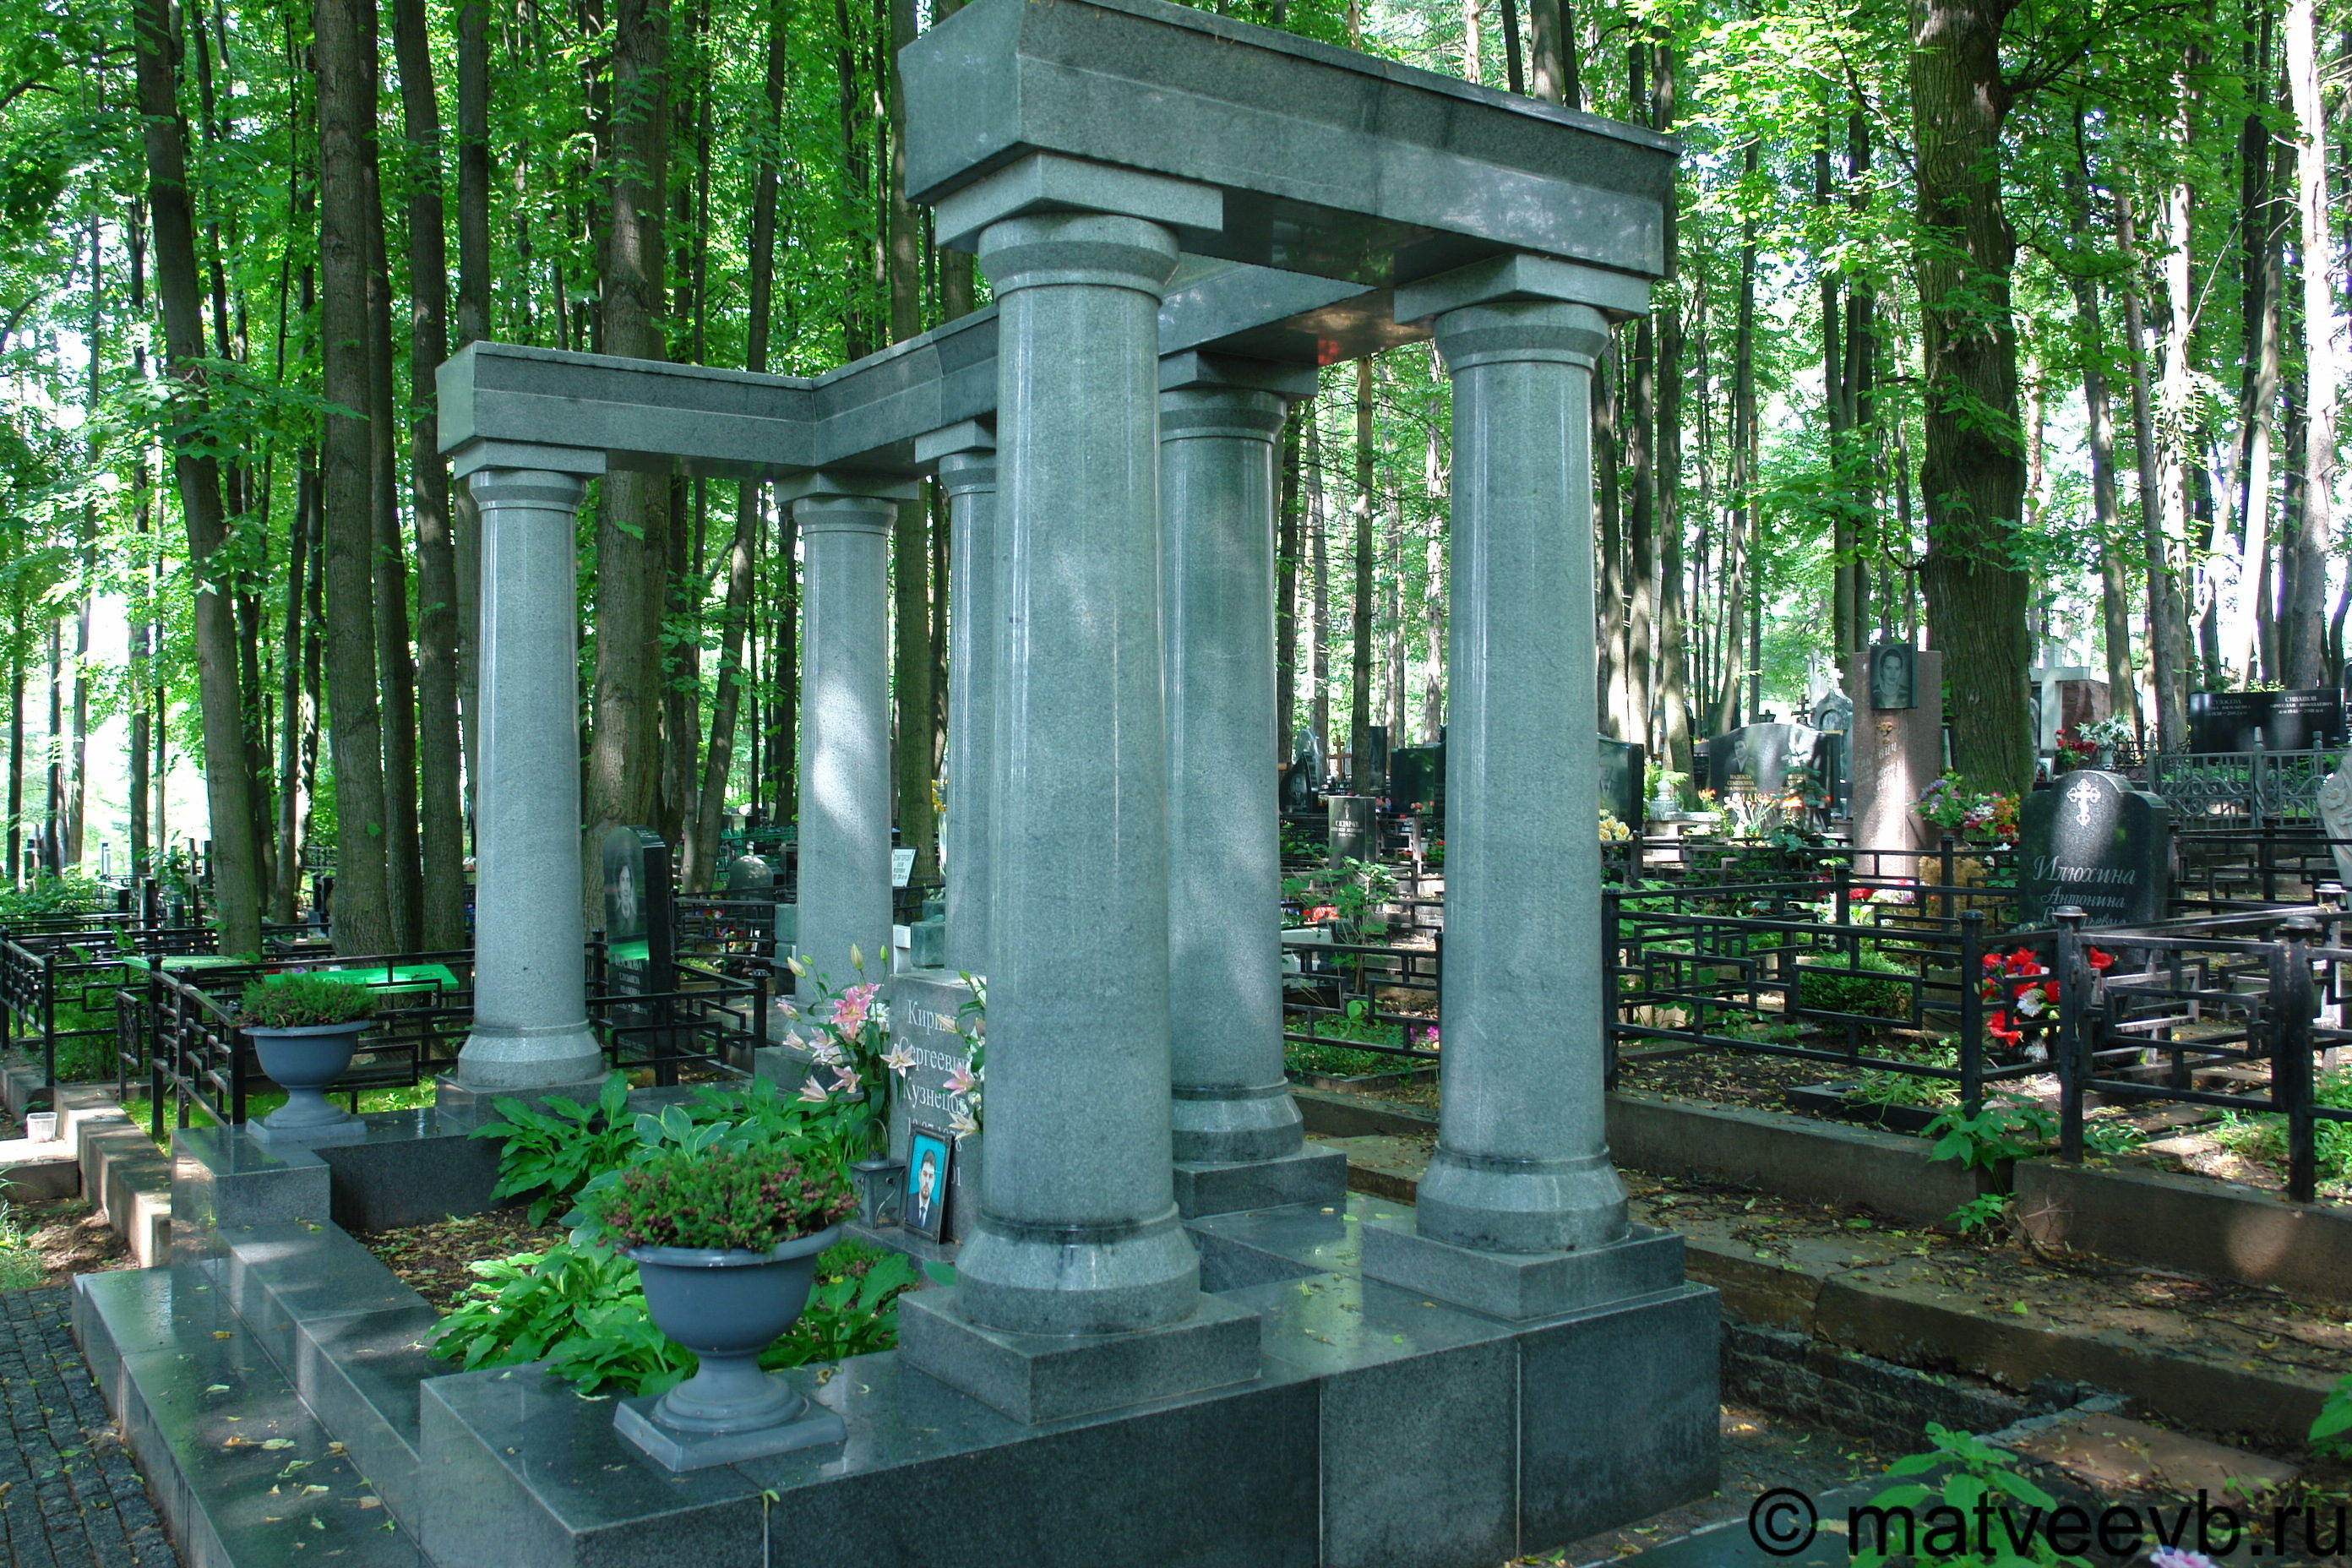 Кунцевская троекуровское кладбище